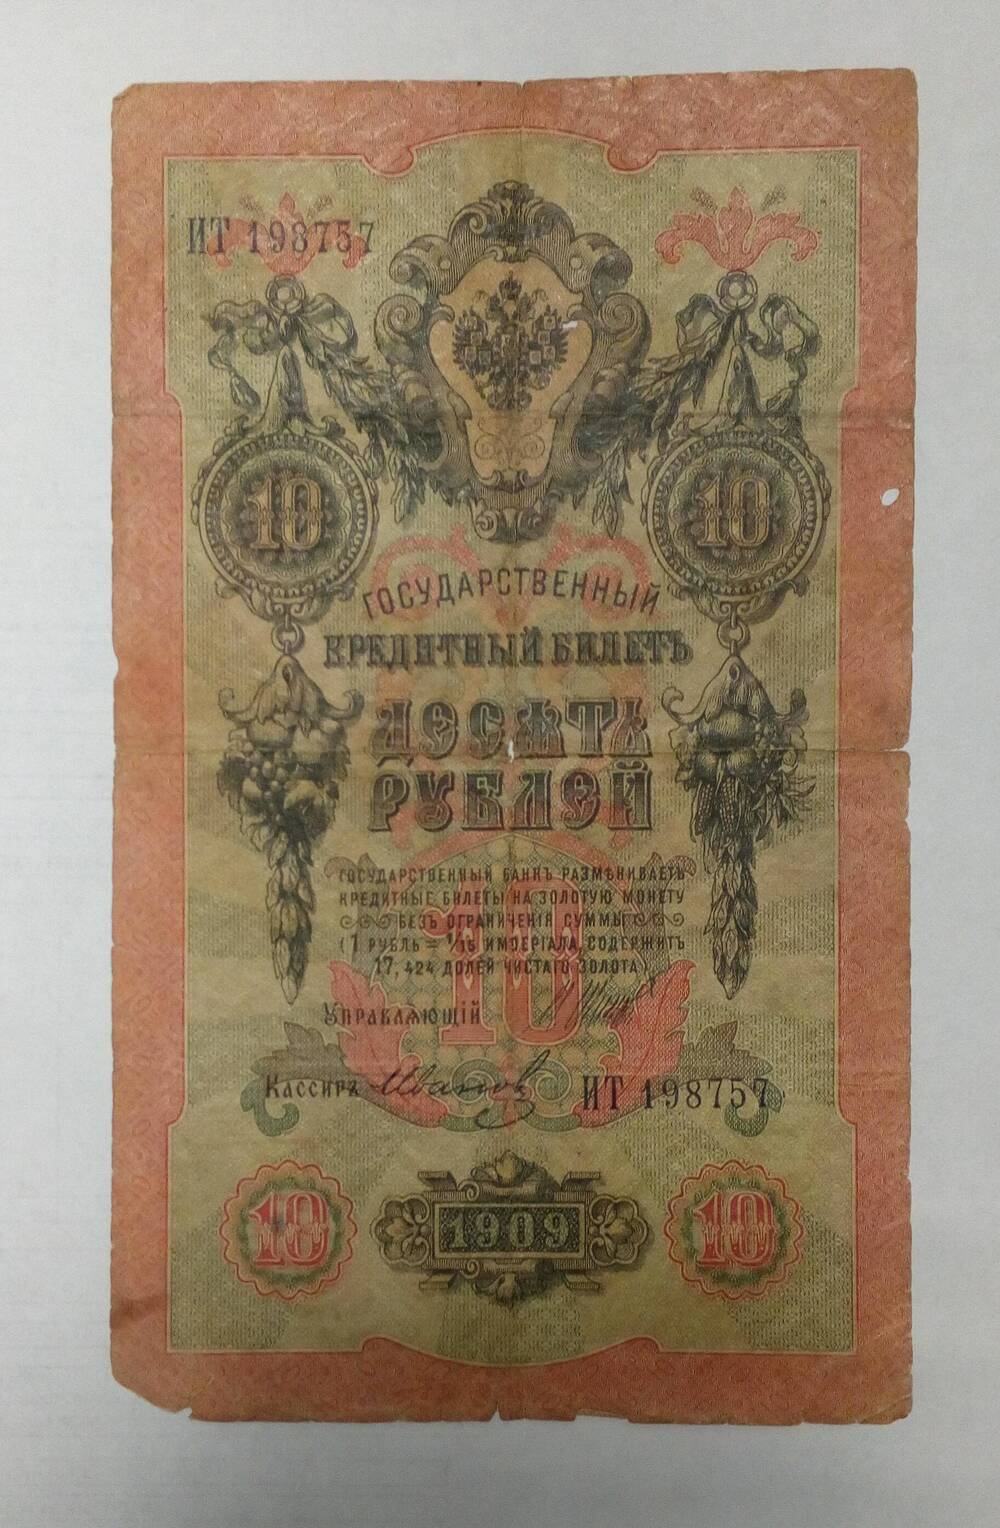 Банкнота Российской империи достоинством 10 рублей, ИТ 198757, 1909 года.